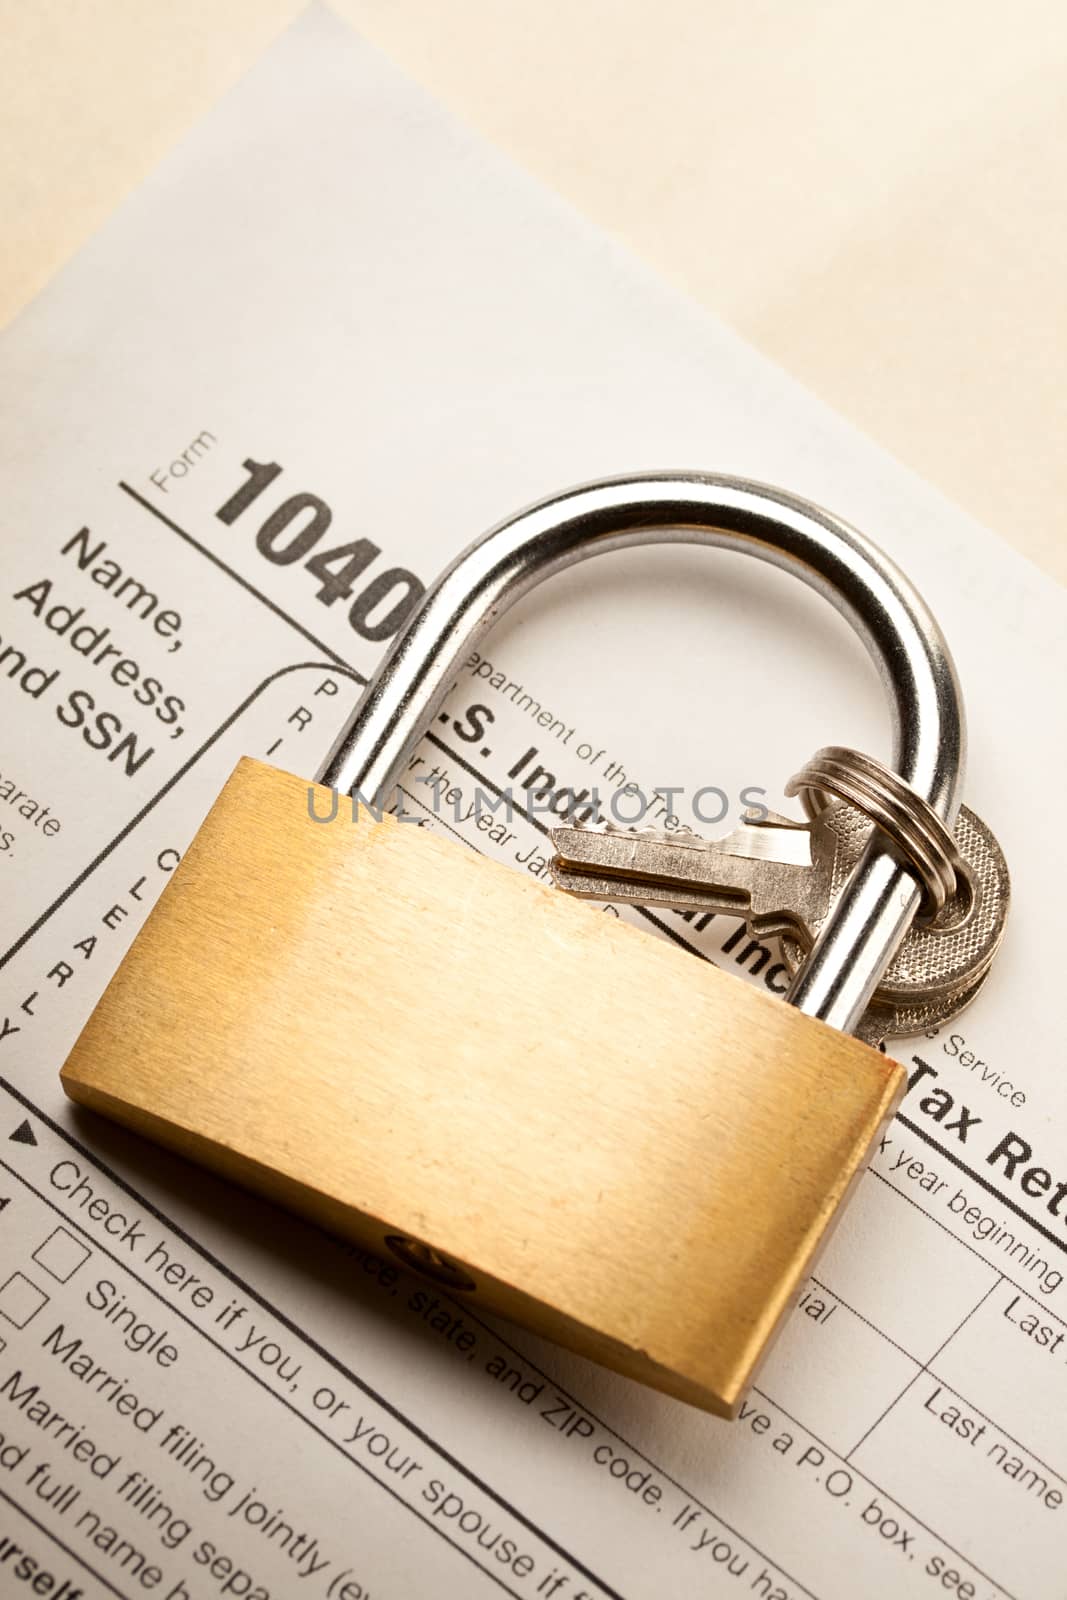 Tax form and key lock by Garsya